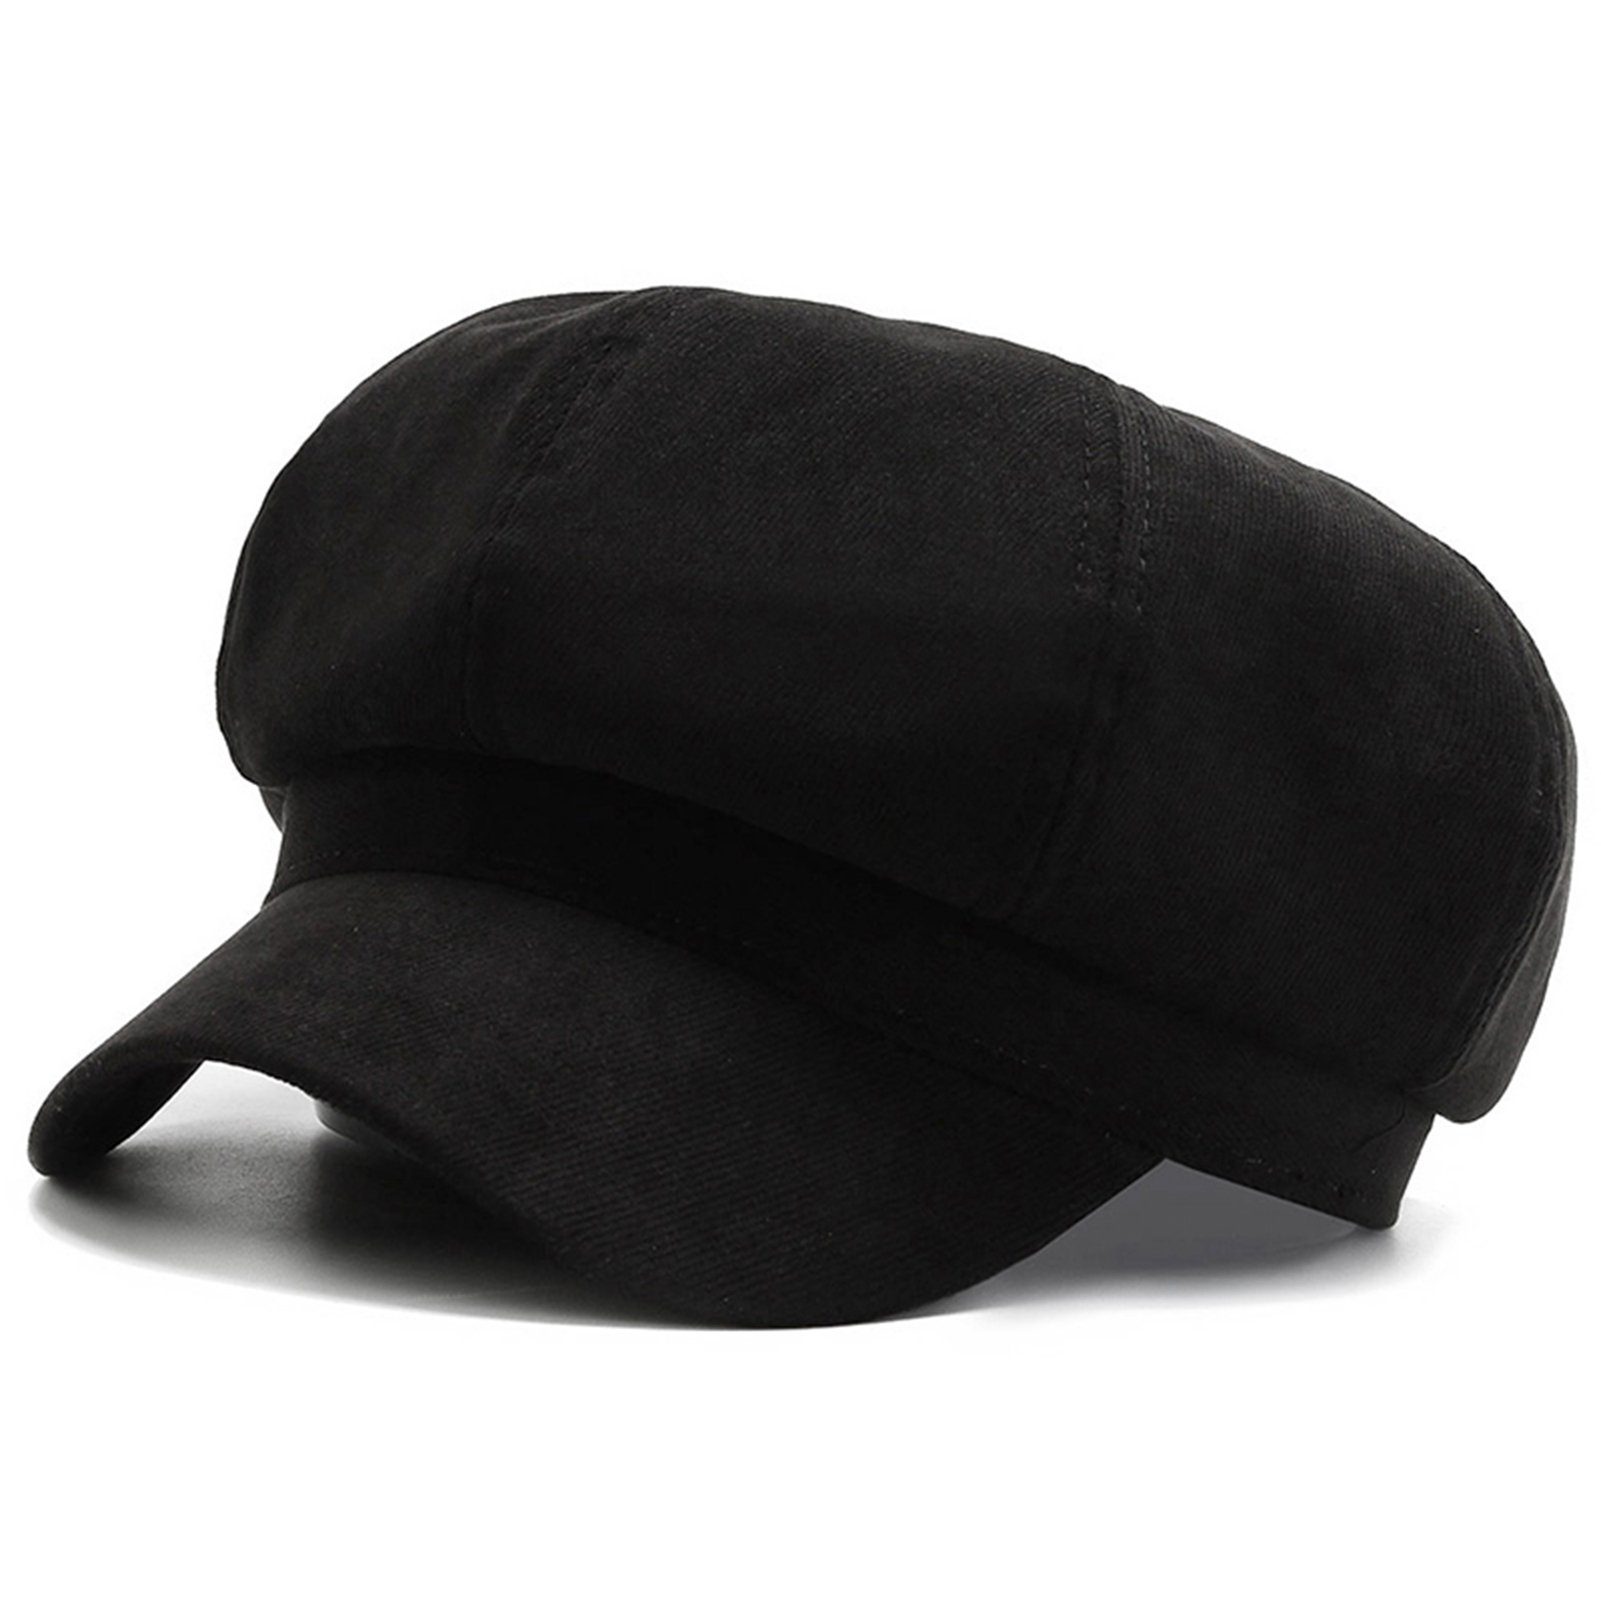 Blusmart Baskenmütze Modischer Hut, Mehrzweck-Freizeit-Baskenmütze, Tragbar Schwarz